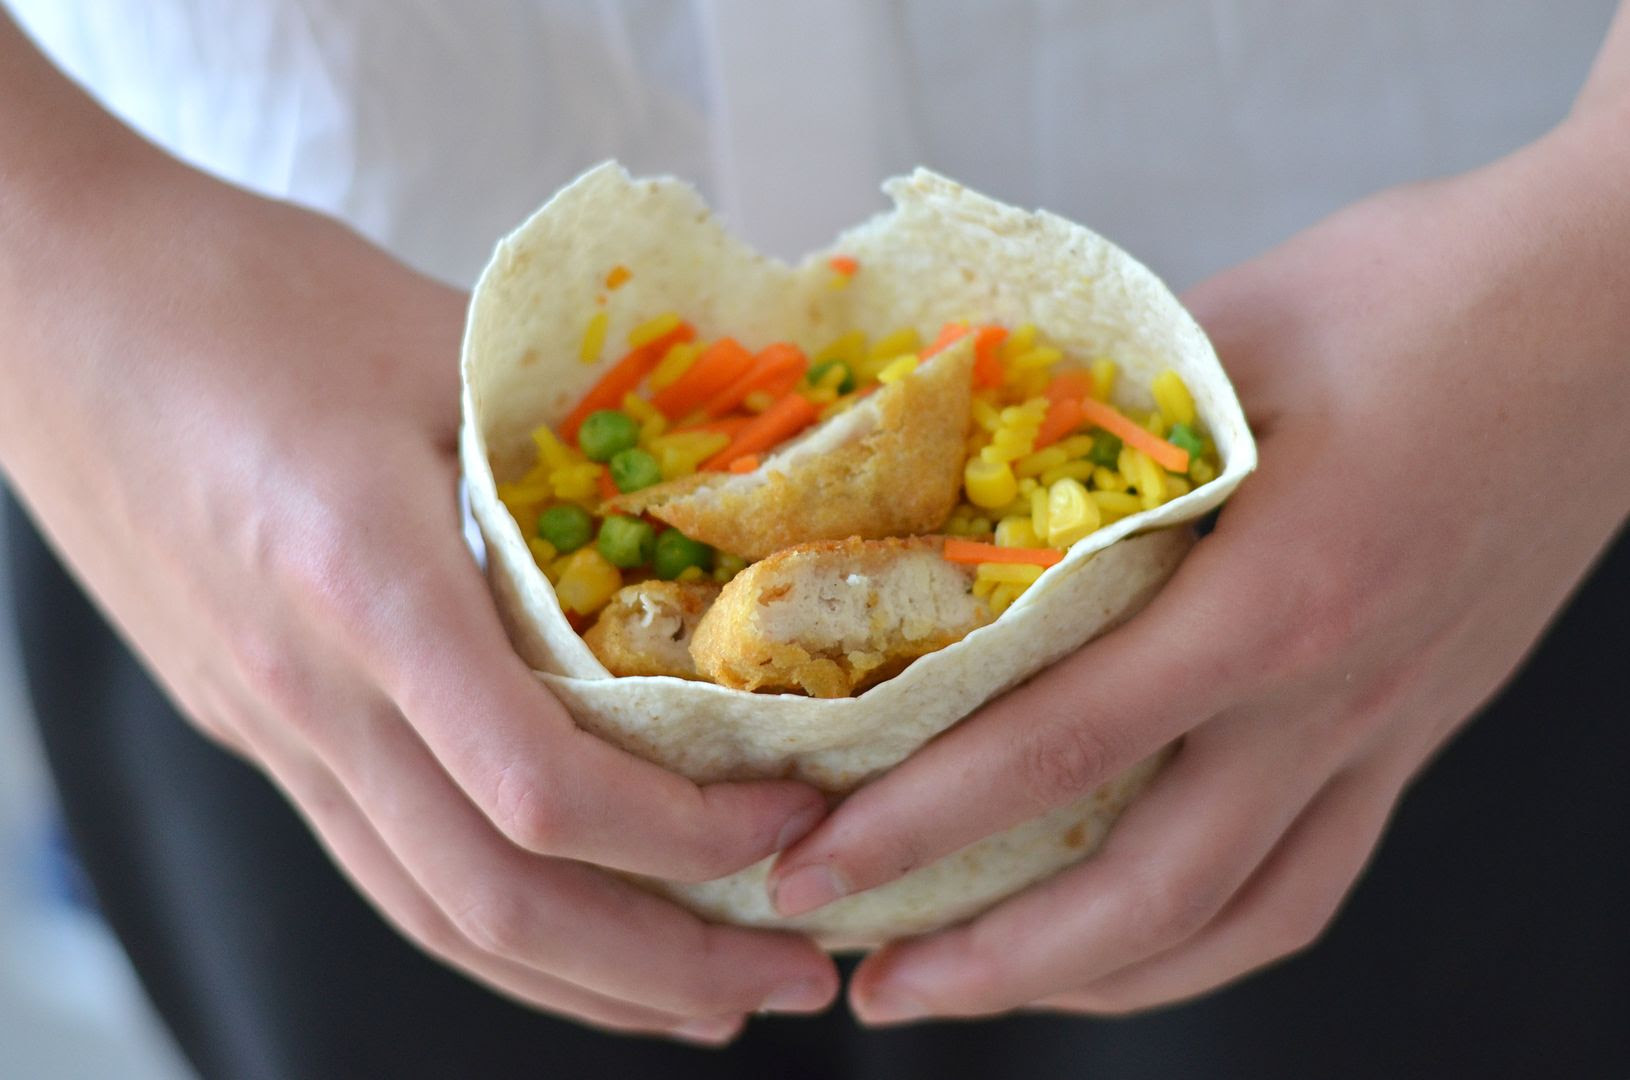 #Afterschoolchefs : Chicken & Rice Wrap